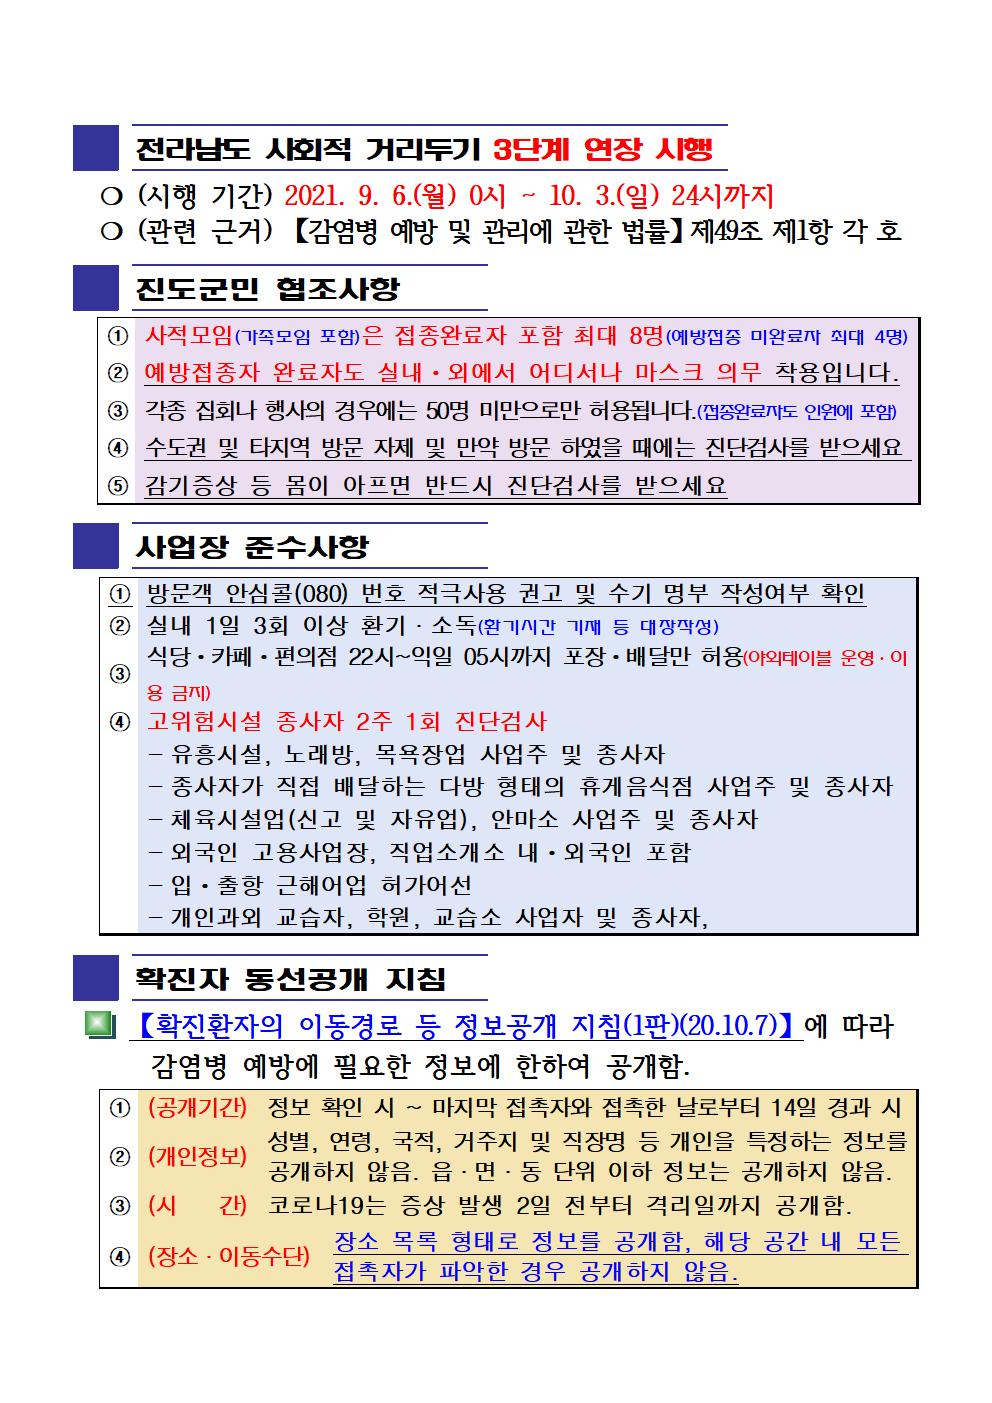 2021년 코로나19 대응 일일상황보고(9월 20일 24시 기준) 첨부#2